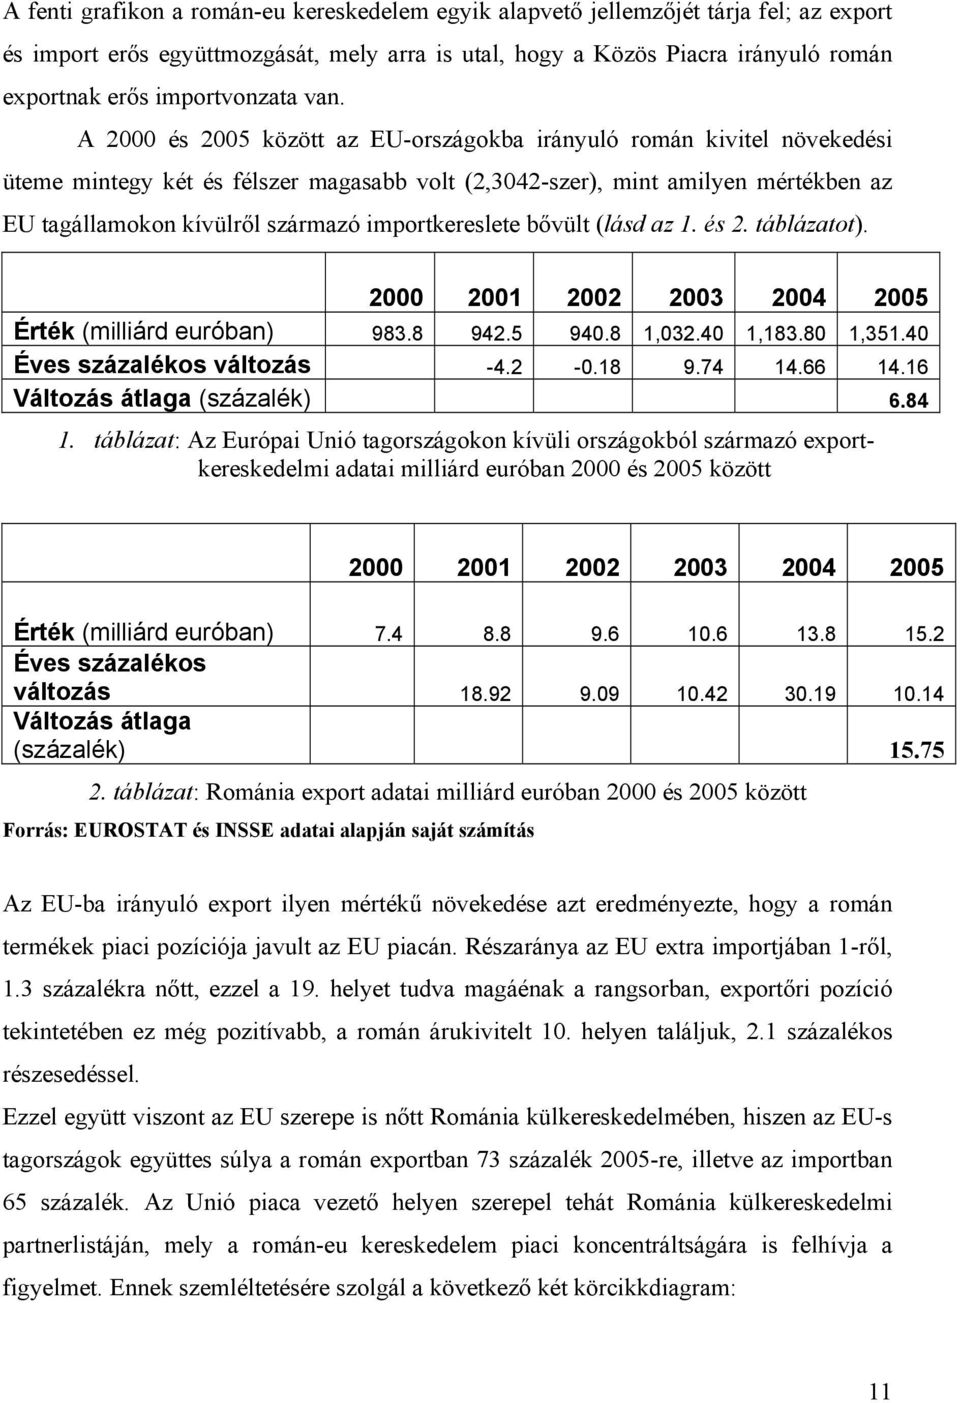 A 2000 és 2005 között az EU-országokba irányuló román kivitel növekedési üteme mintegy két és félszer magasabb volt (2,3042-szer), mint amilyen mértékben az EU tagállamokon kívülről származó